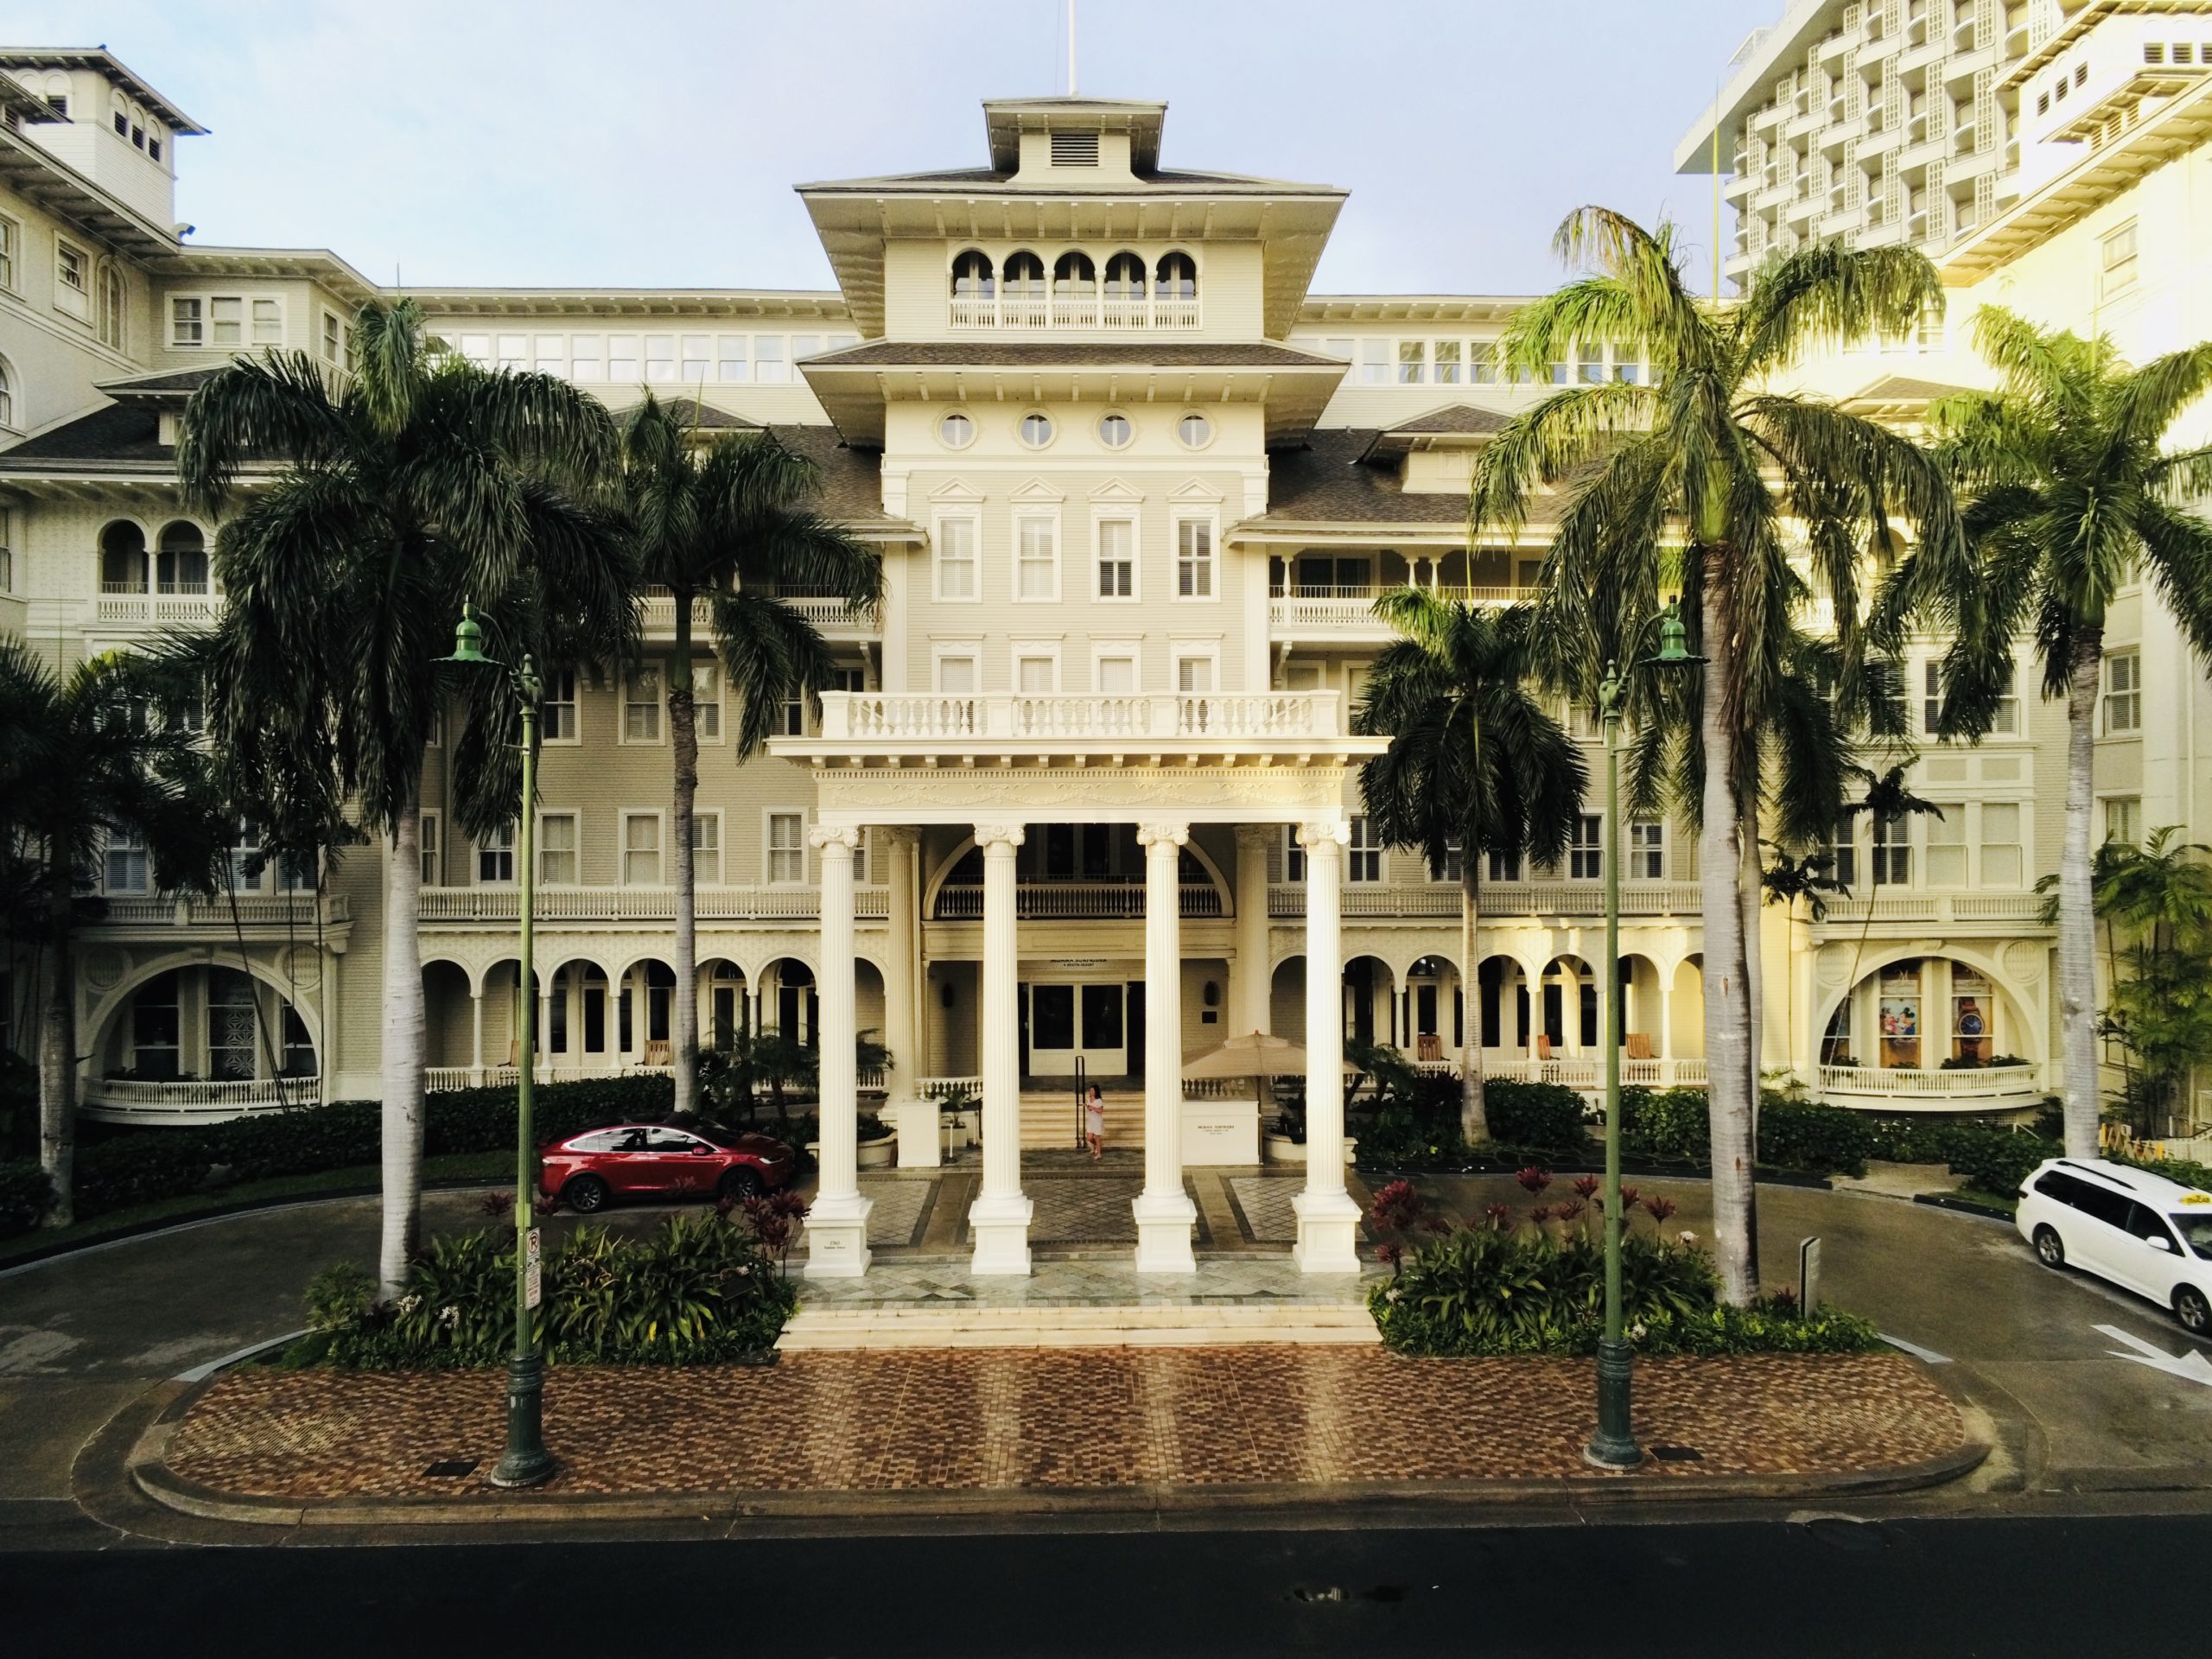 Moana Surfrider Hotel Waikiki